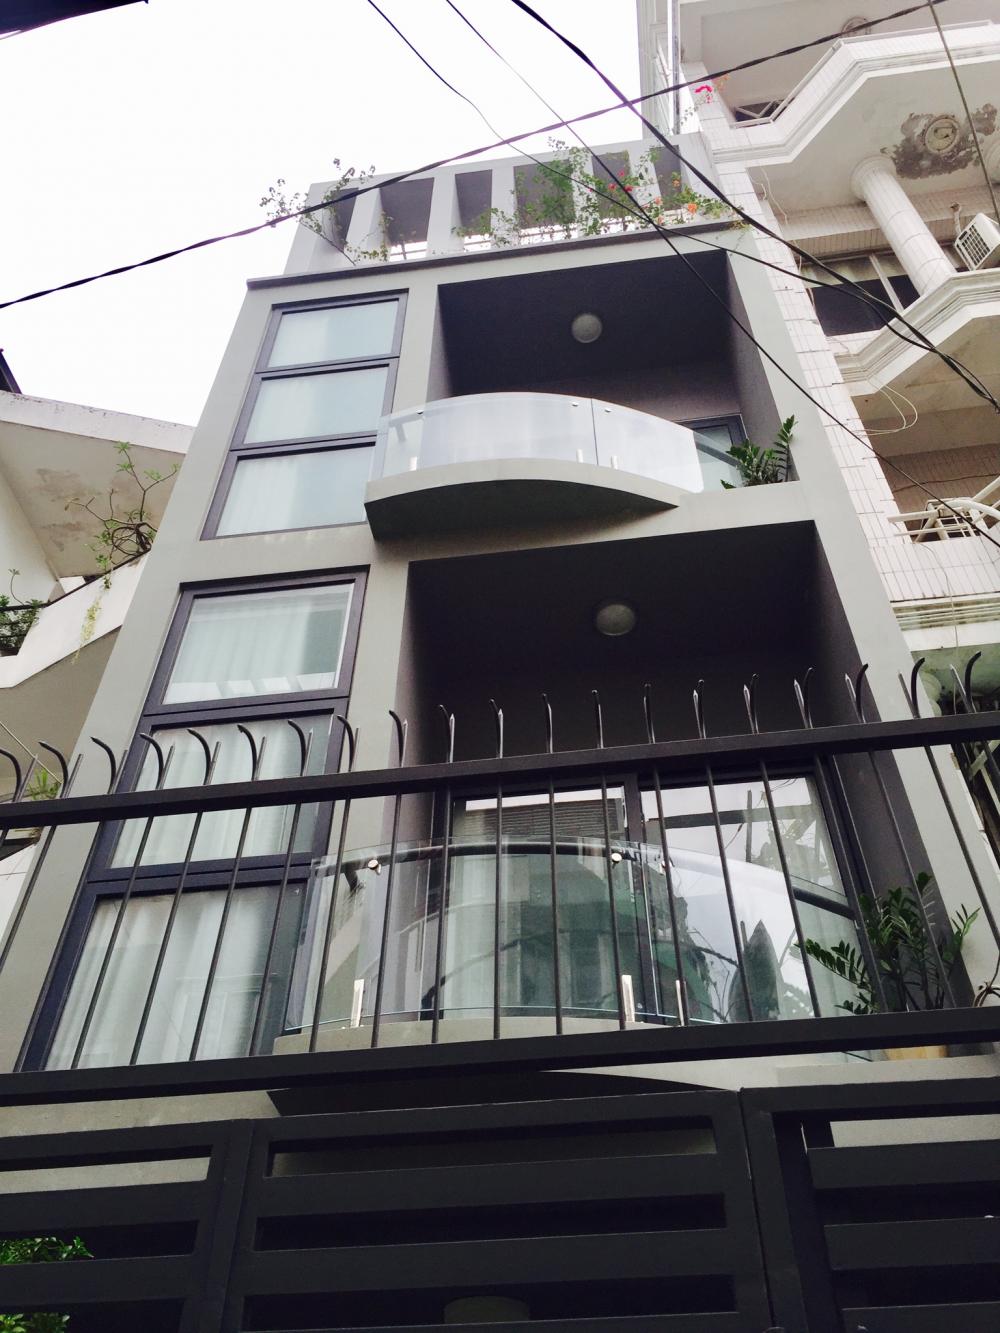 Bán nhà MT Lê Hồng Phong, căn nhà giá rẻ nhất Q. 10, đầu tư sinh lợi ngay 1 tỷ, LH nhanh 0915109799